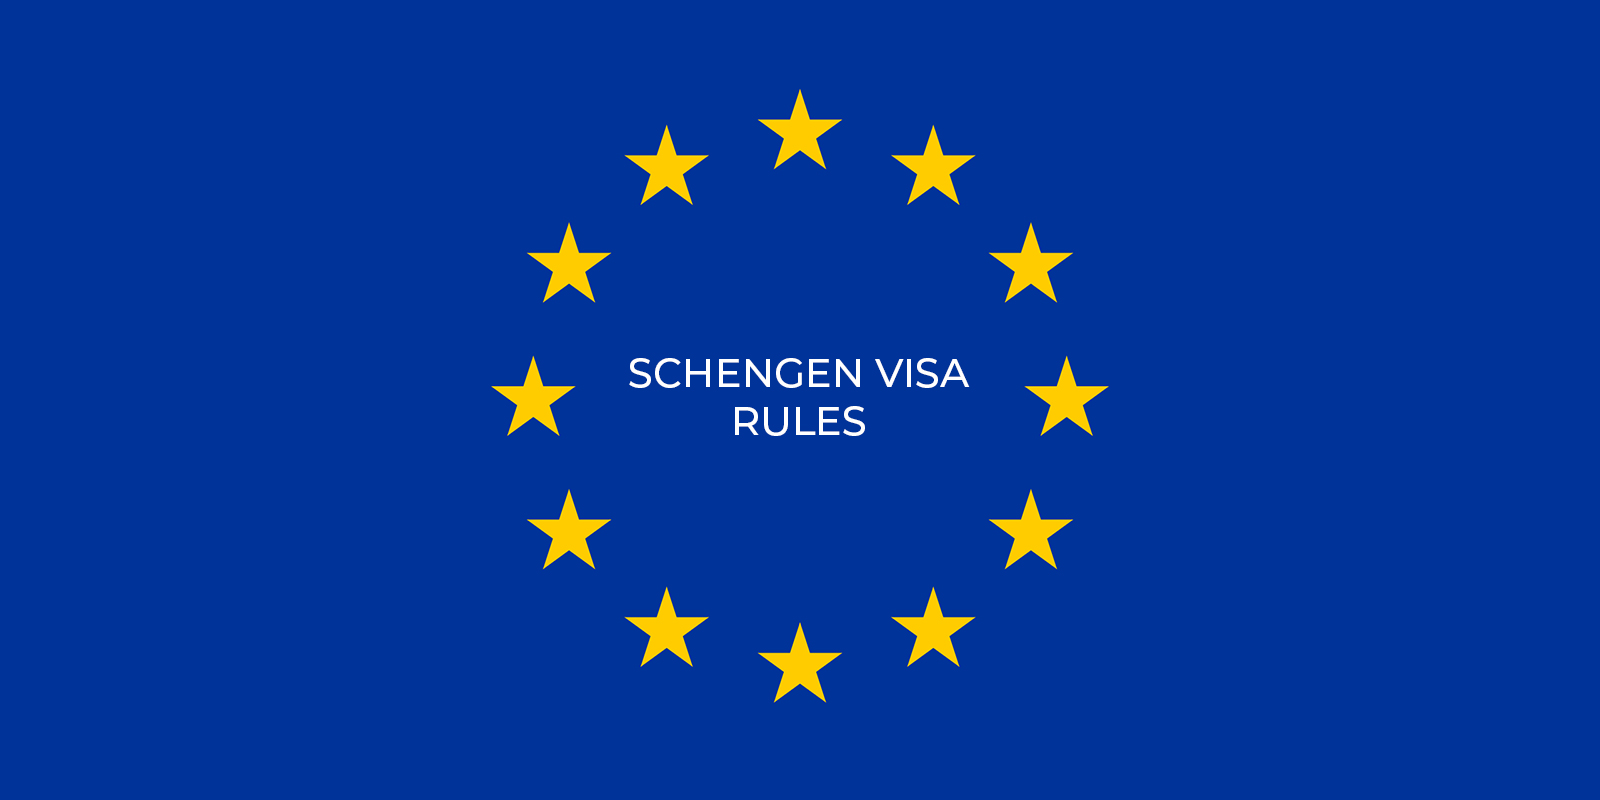 Schengen visa rules